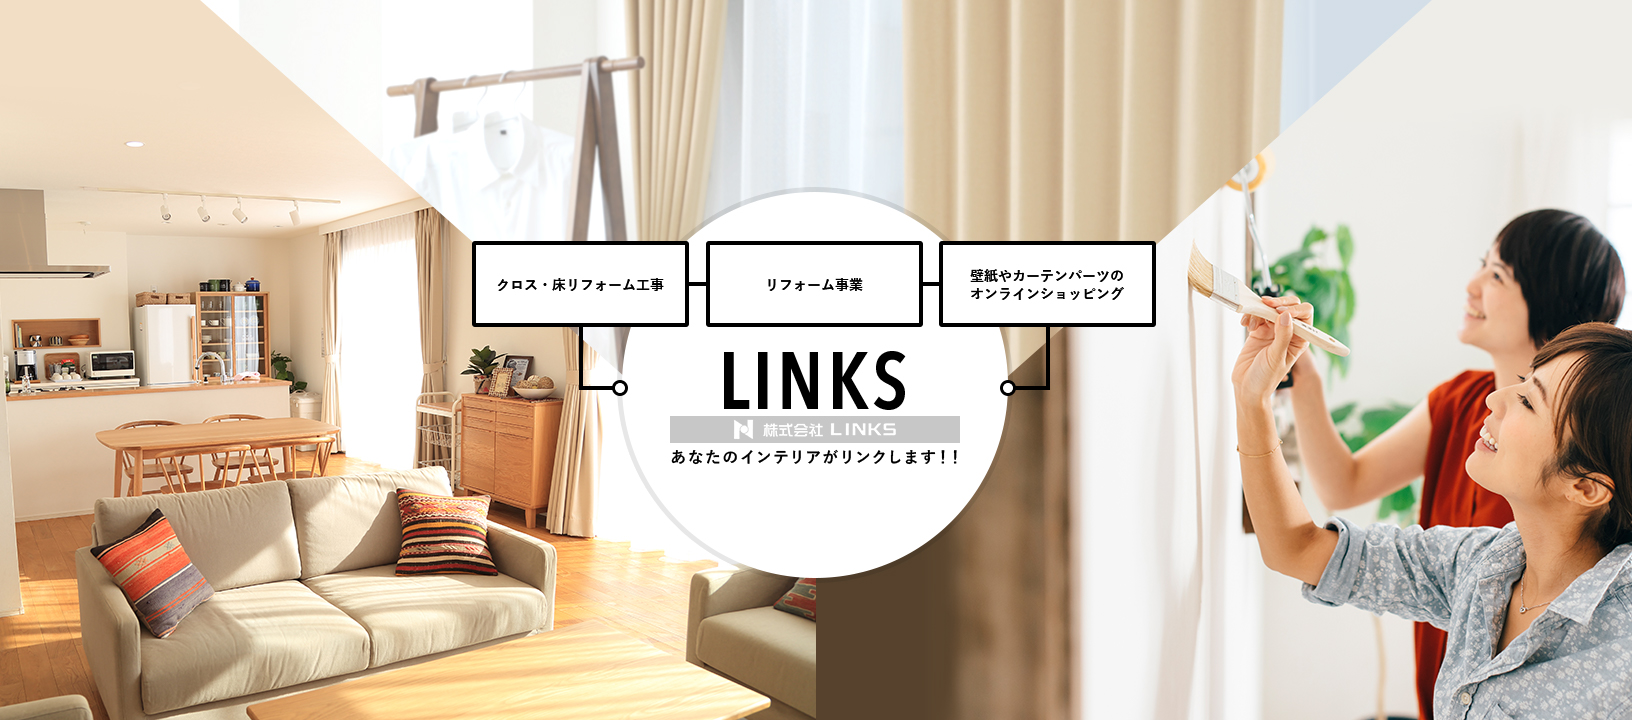 LINKS あなたのインテリアがリンクします！！ クロス・床リフォーム工事 DIYサポート事業 壁紙やカーテンパーツのオンラインショッピング